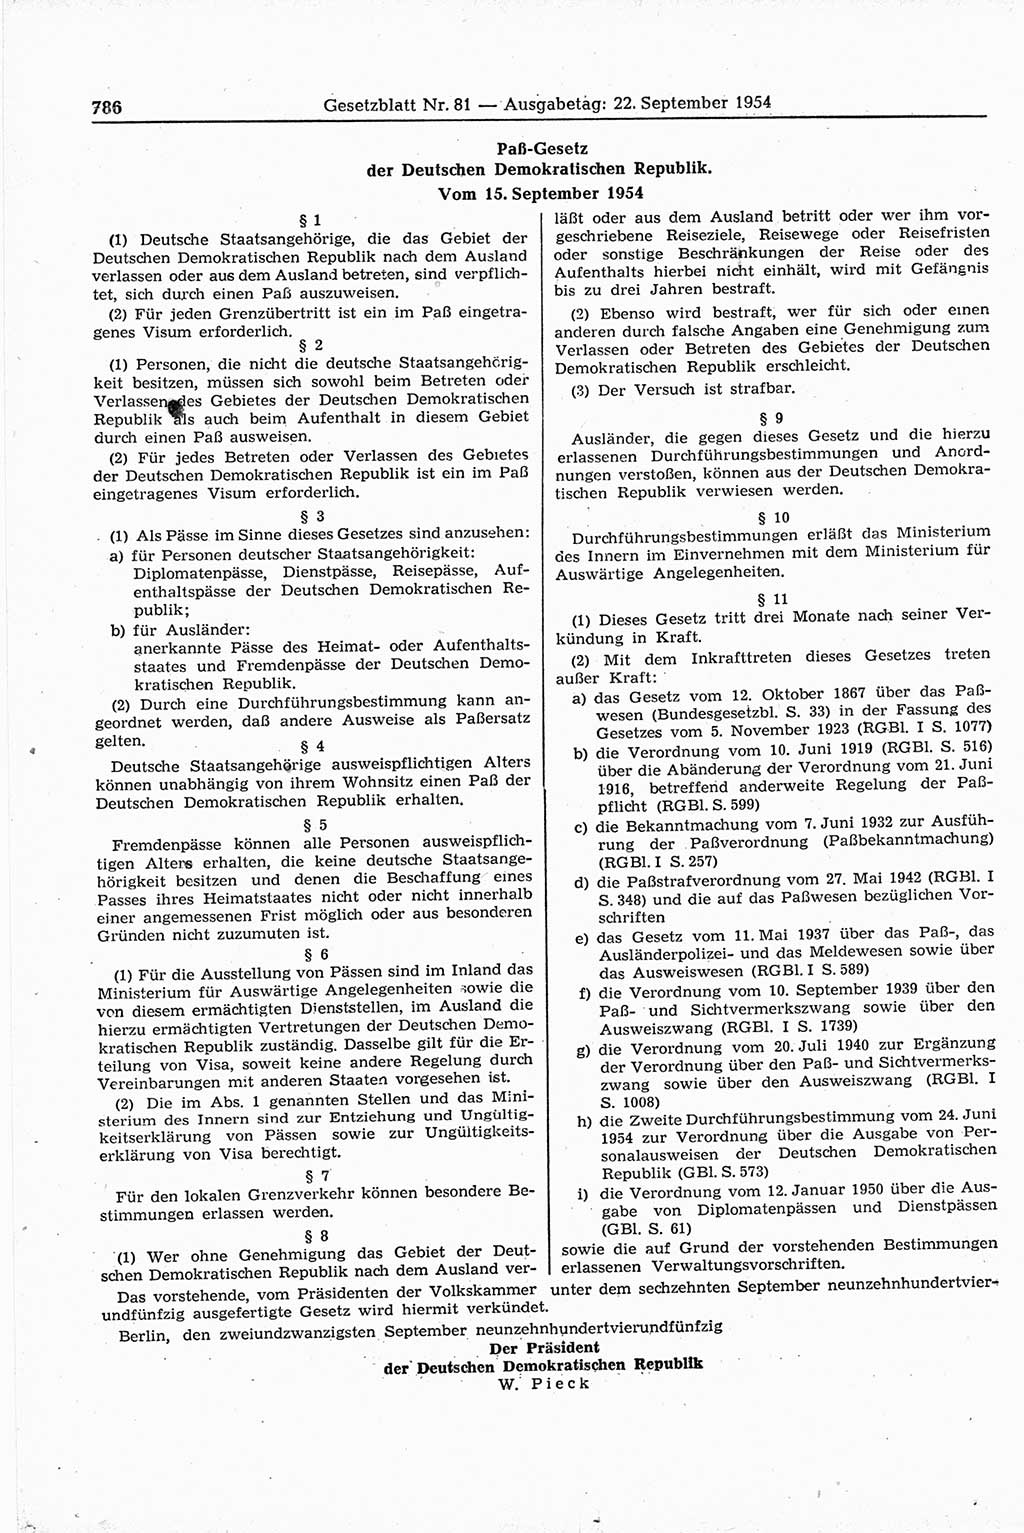 Gesetzblatt (GBl.) der Deutschen Demokratischen Republik (DDR) 1954, Seite 786 (GBl. DDR 1954, S. 786)